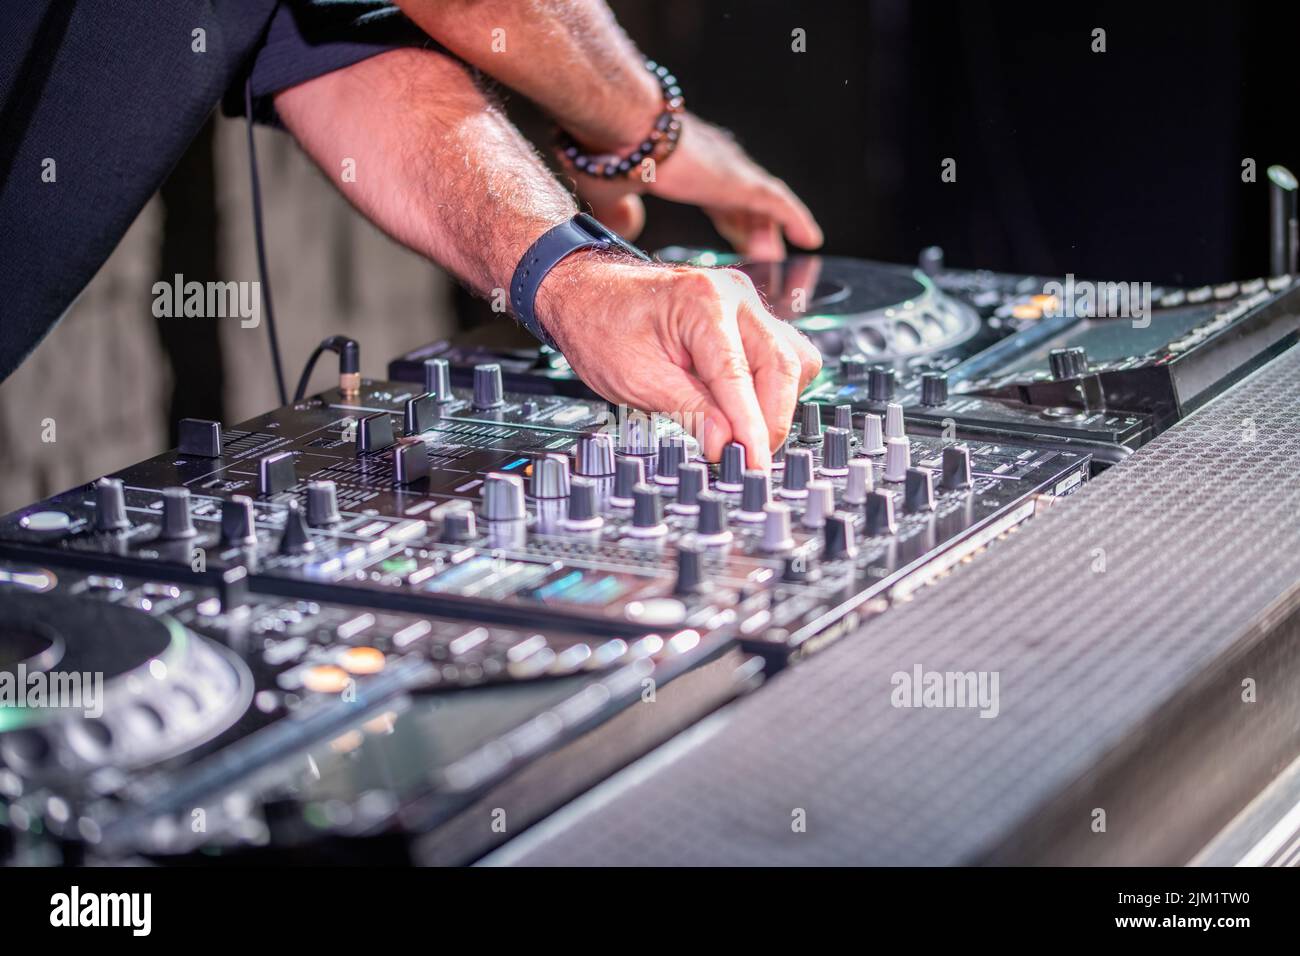 Dj jugando discoteca house progresivo en el concierto de música electro. Manos sobre equipos de DJ Foto de stock